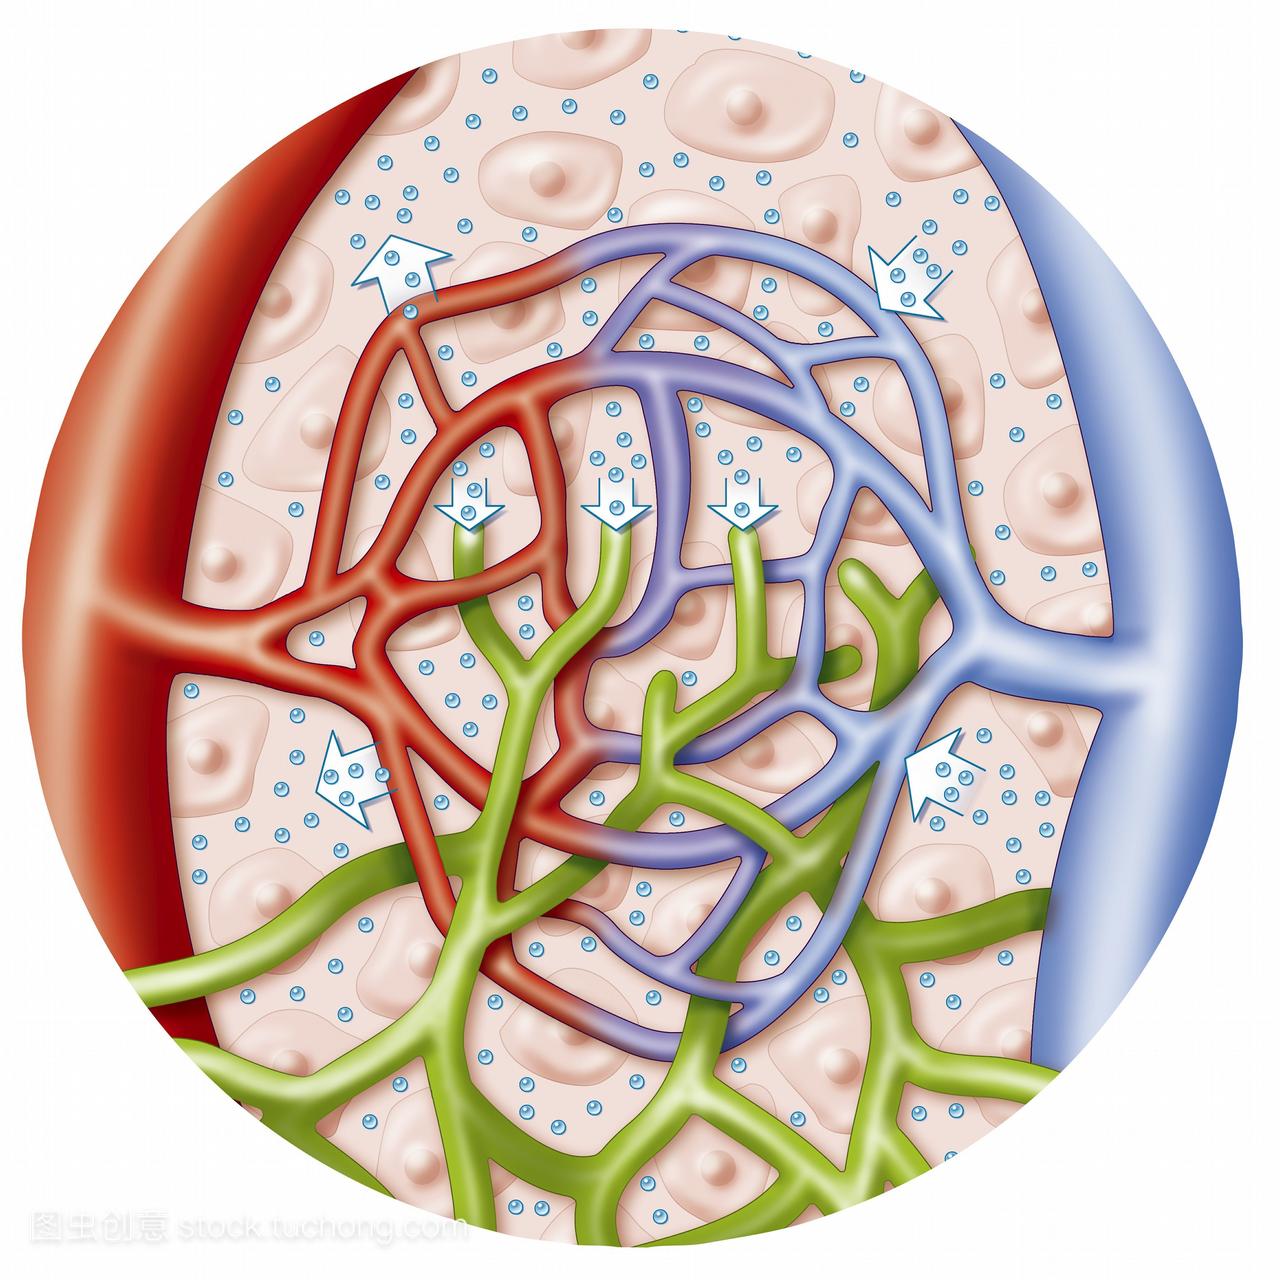 组织间质液疏散系统位于细胞间隙内的图解。液